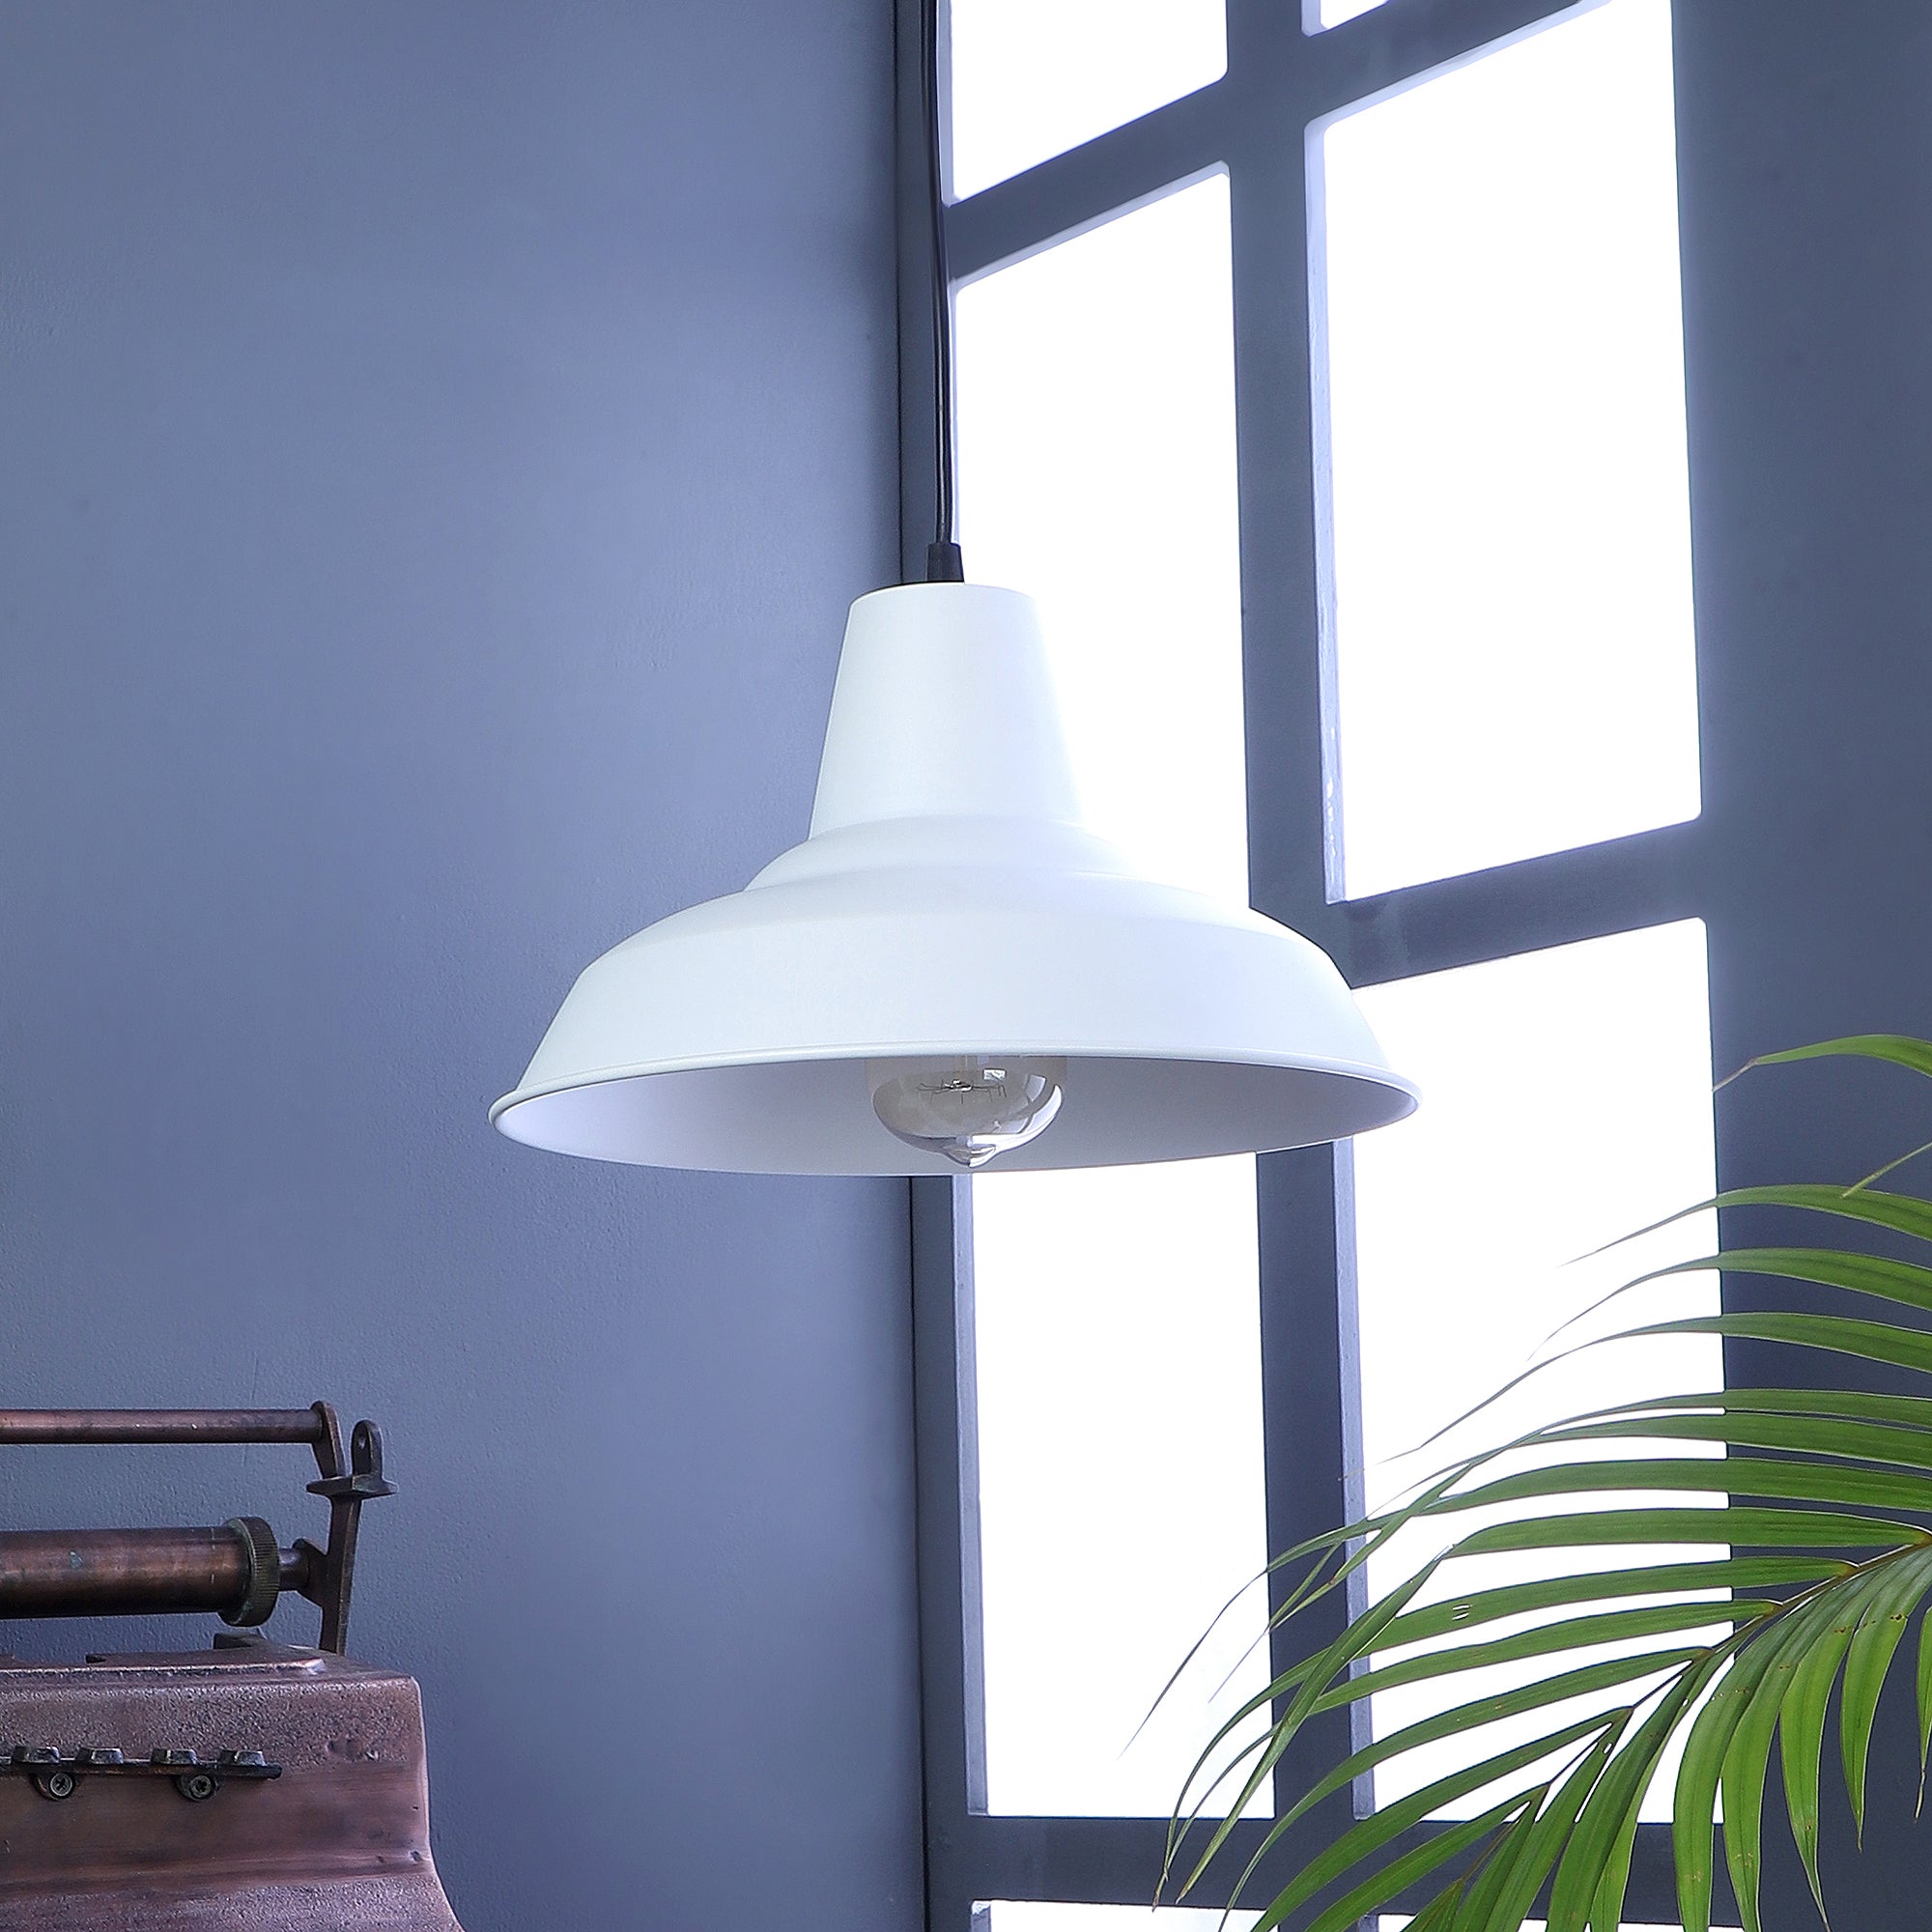 Opi Minimal Pastel White Metal Single Hanging Light by SS Lightings